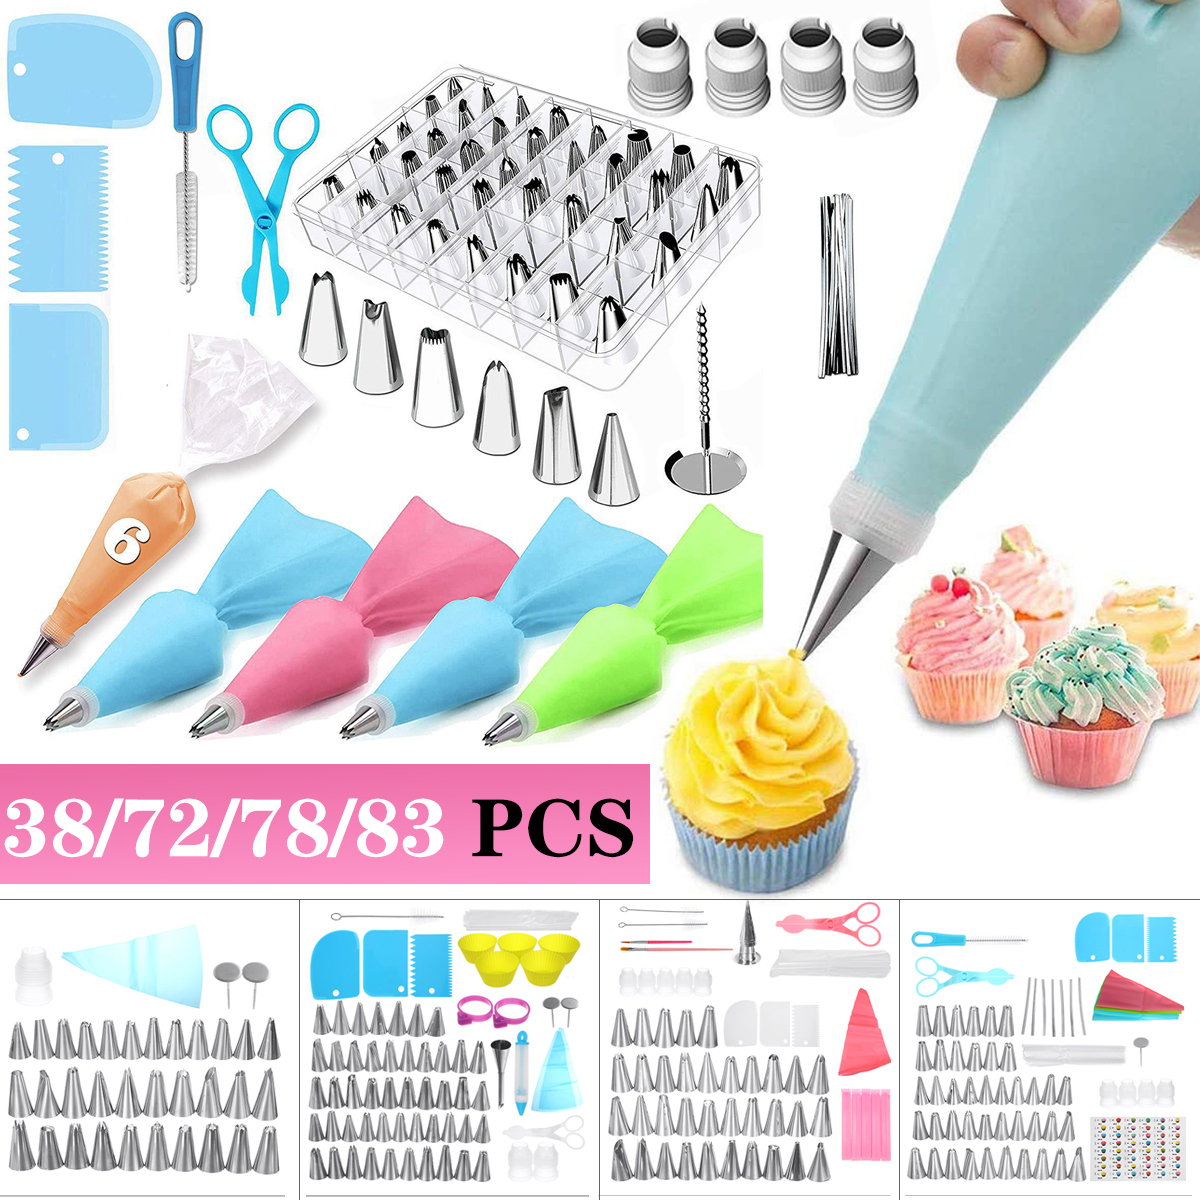 38727883-PCS-Cake-Decorating-Supplies-Kits-Pastry-Supplies-DIY-Tools-1849126-1